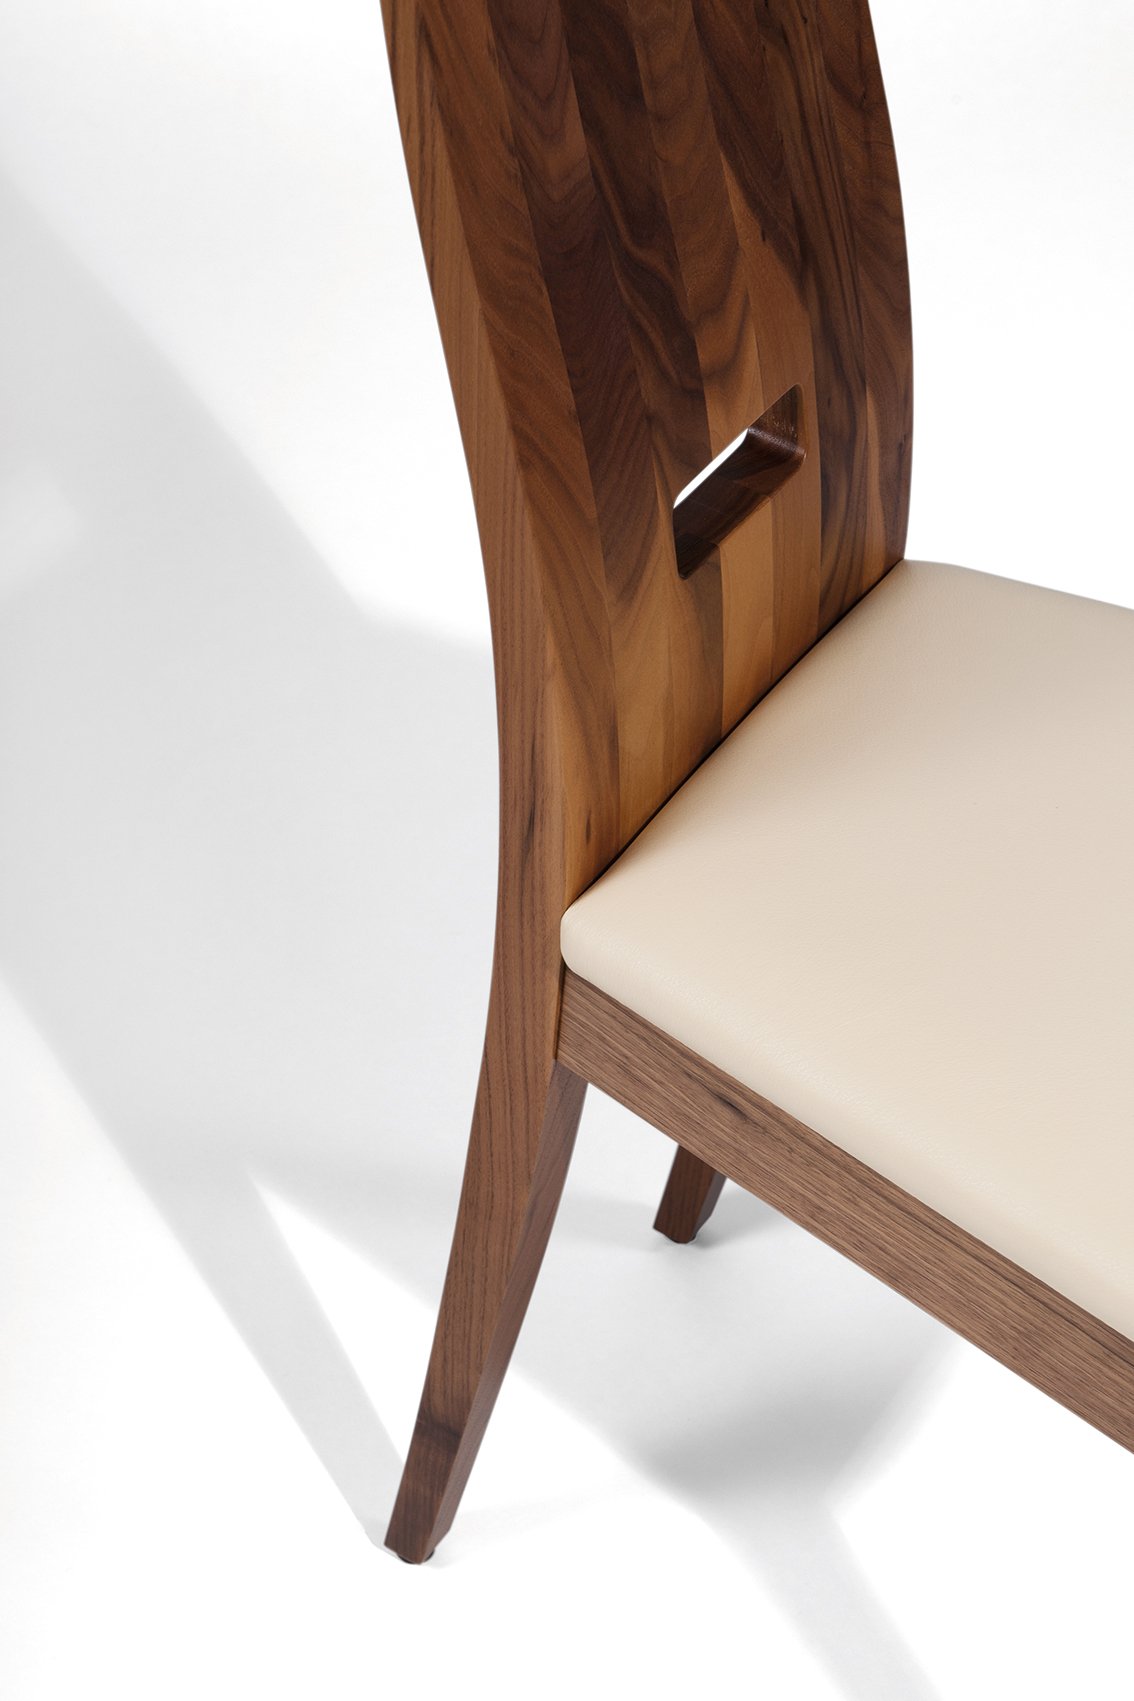 Eleganter Designer Stuhl mit Weisspolster - Holzartent Auswahl - 'Sitwell Fine Cushion'